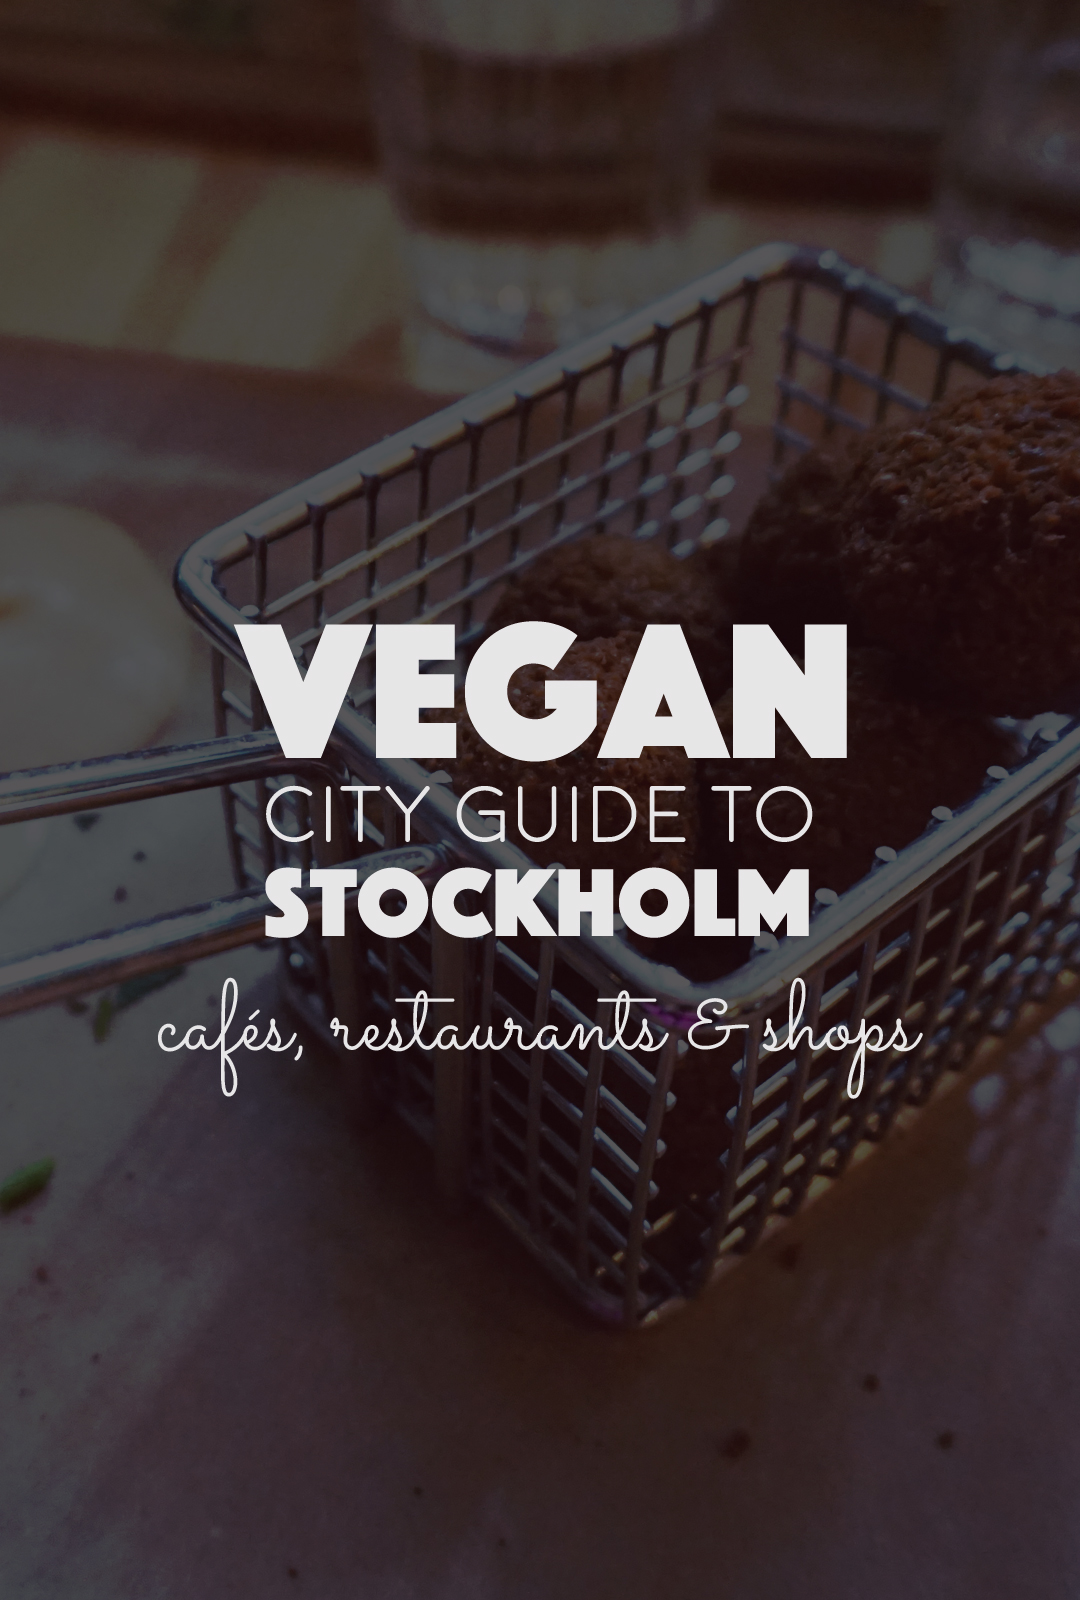 Vegan City Guide to Stockholm | http://BananaBloom.com Vegan City Guide, Vegan Food in Stockholm, Plant Based, Café Restaurant Shop, Healthy Food, Sweden, Visit Sweden